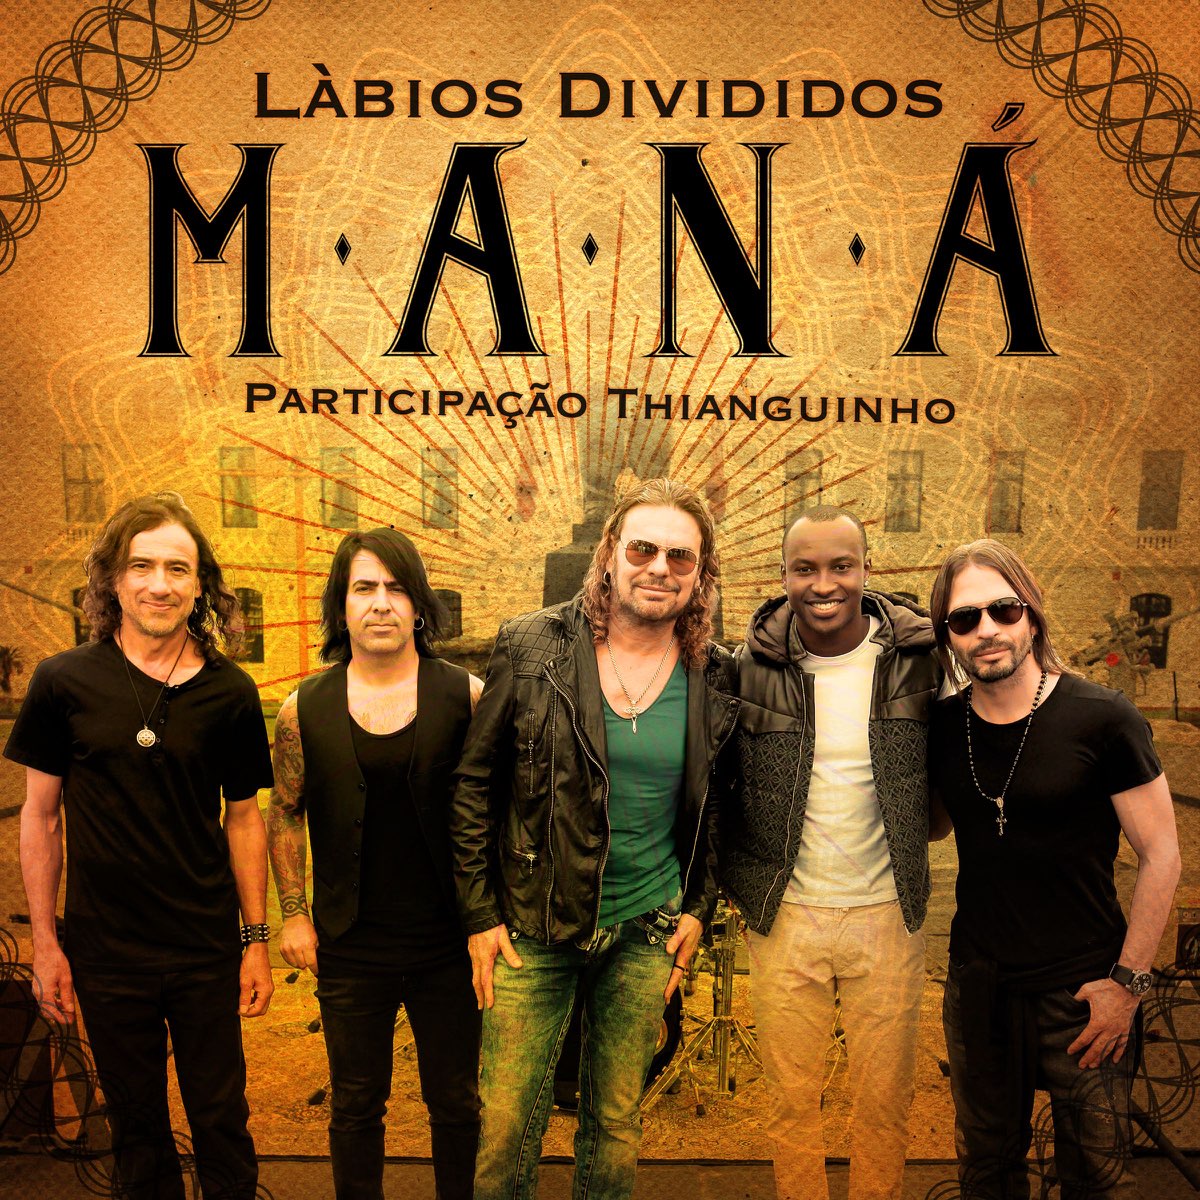 Lábios Divididos (feat. Thiaguinho) - Single by Maná on Apple Music